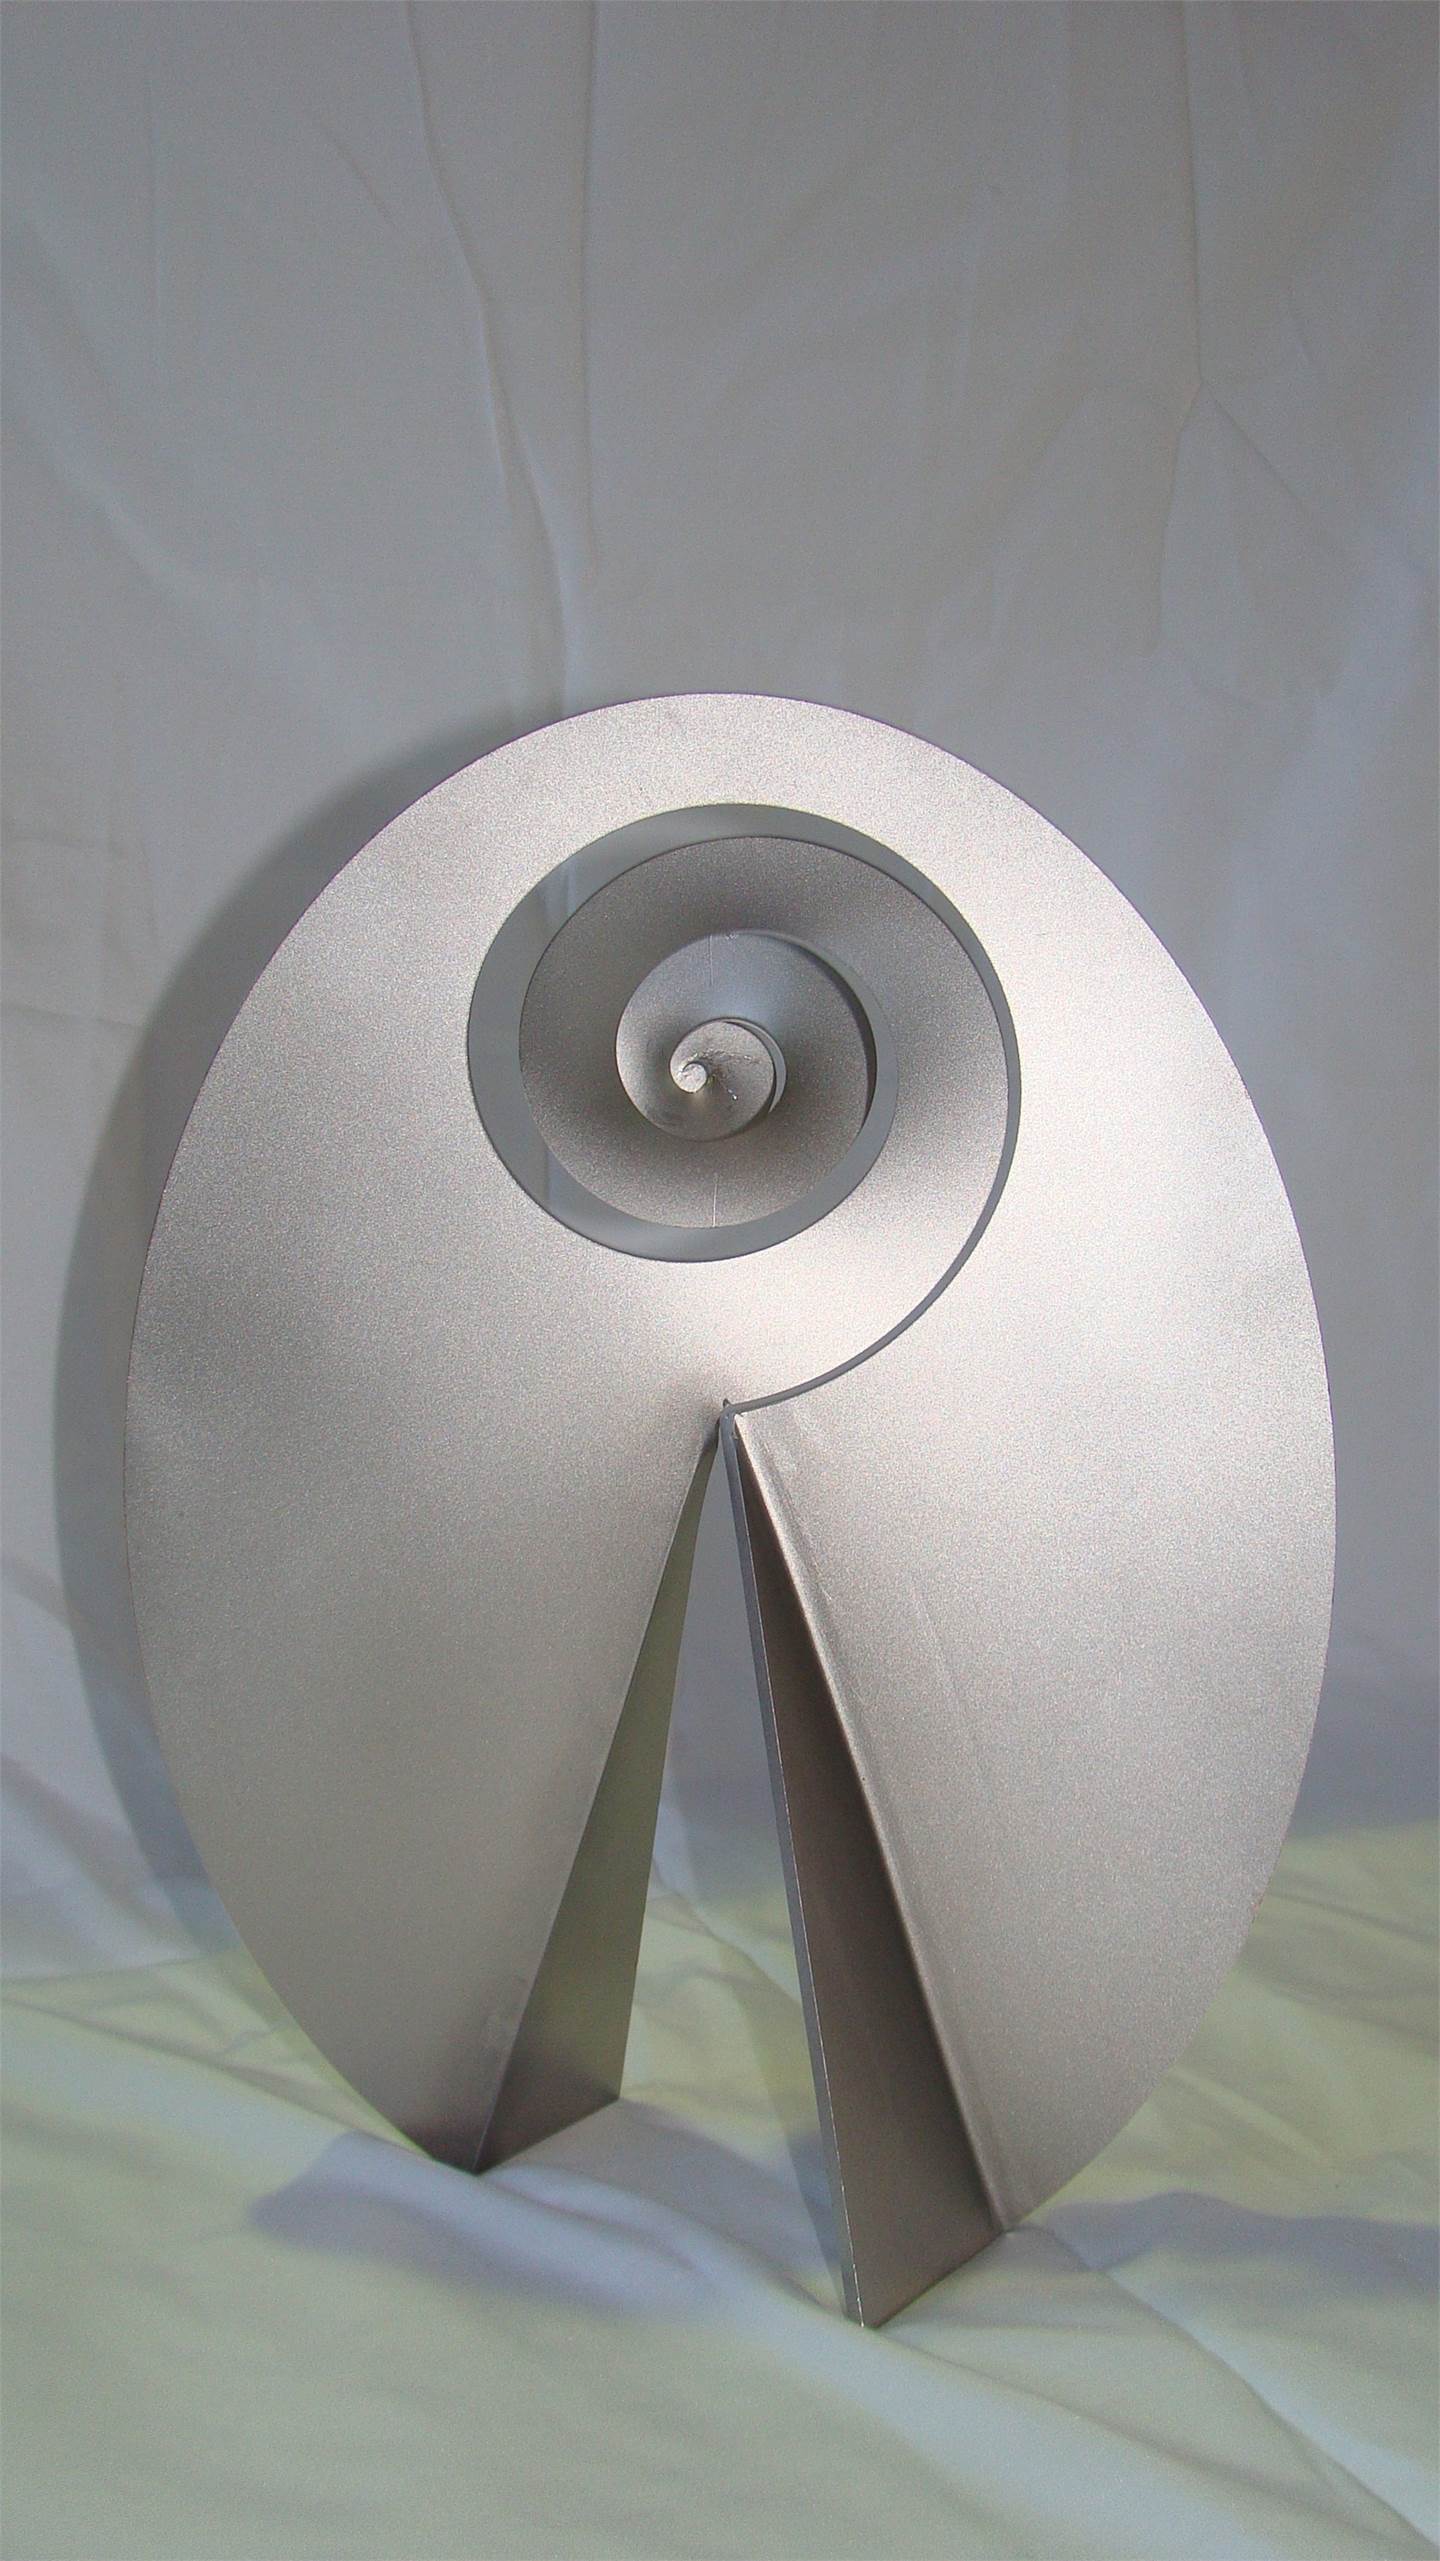 Carrapicho ó vento mareiro (Descomposición del óvalo), original Abstrait Métal Sculpture par Juan Coruxo